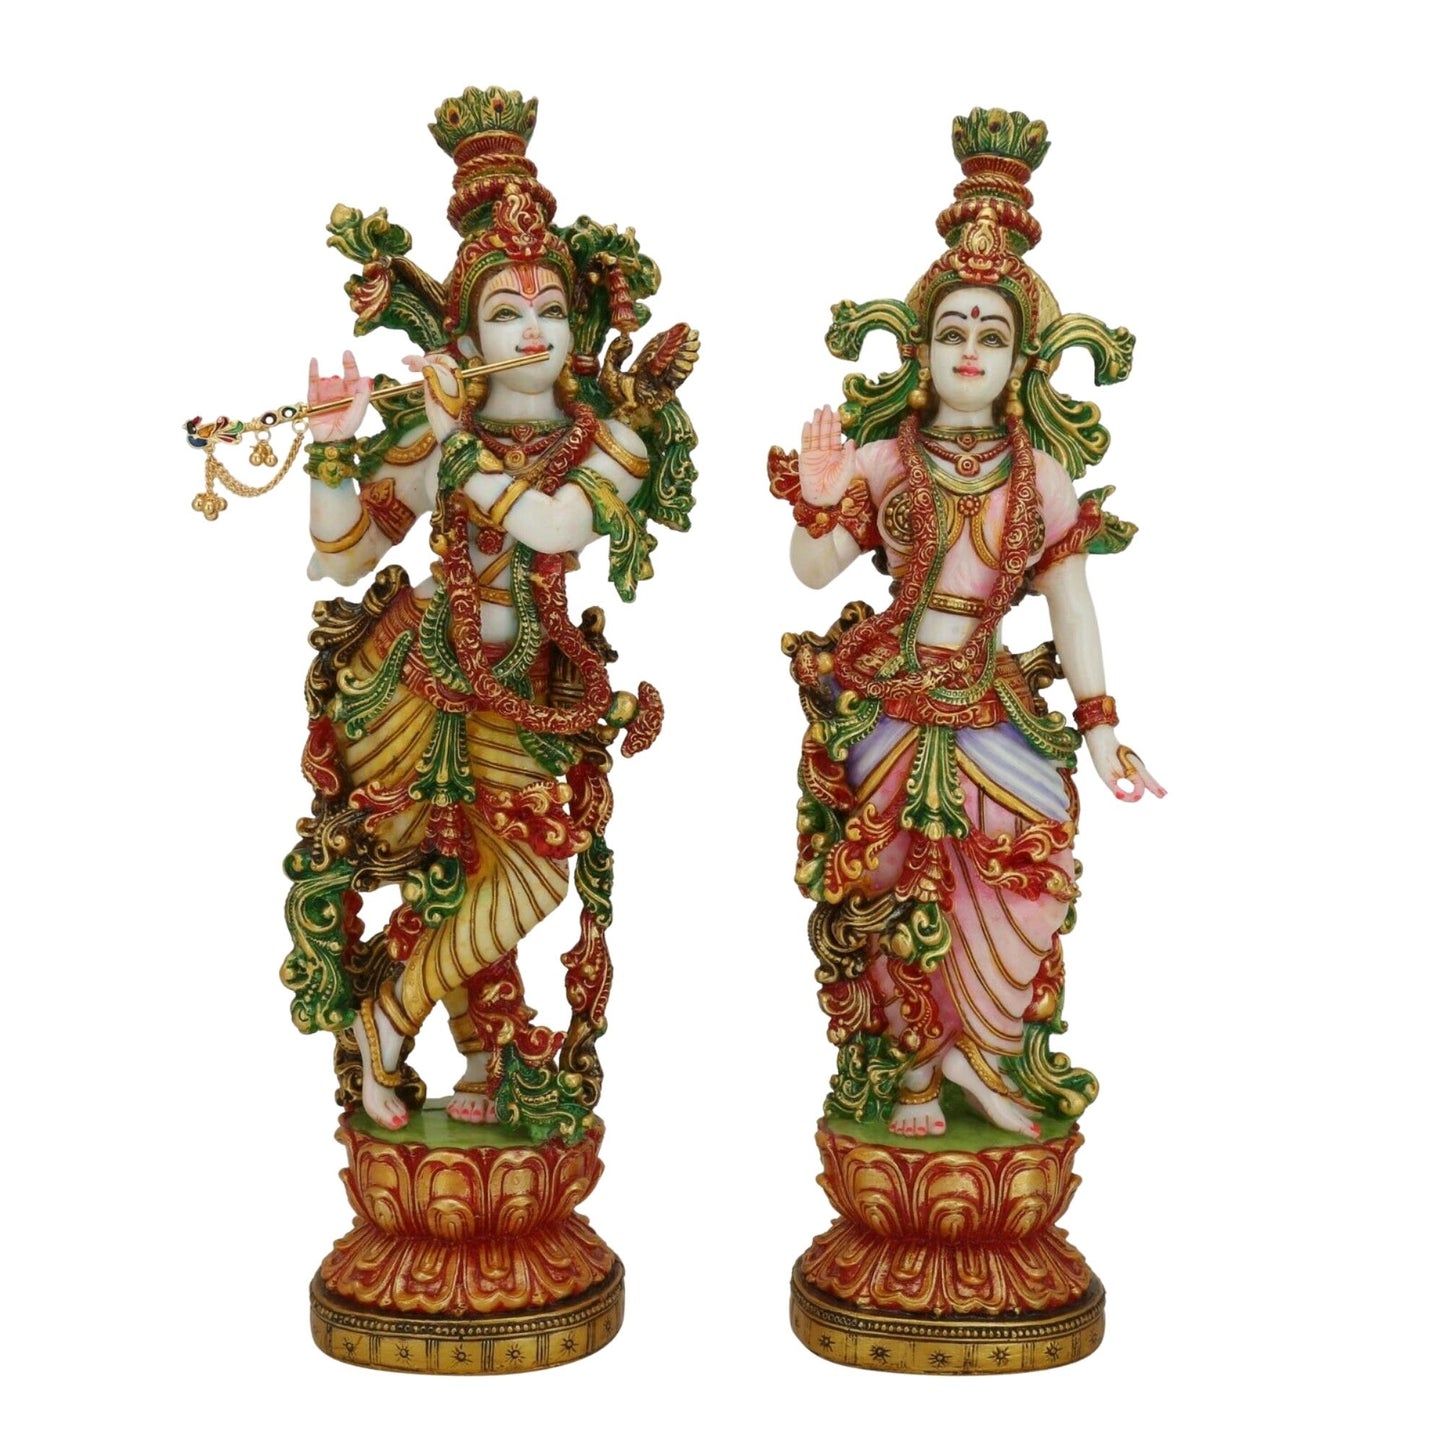 Radha Krishna statue - Large 15 inches Marble Radha Krishna Murti - Divine Couple Idol - Multicolor figurine Handpainted Radha Kanha Murti - Special Wedding Housewarming Anniversary Gifts Sculpture